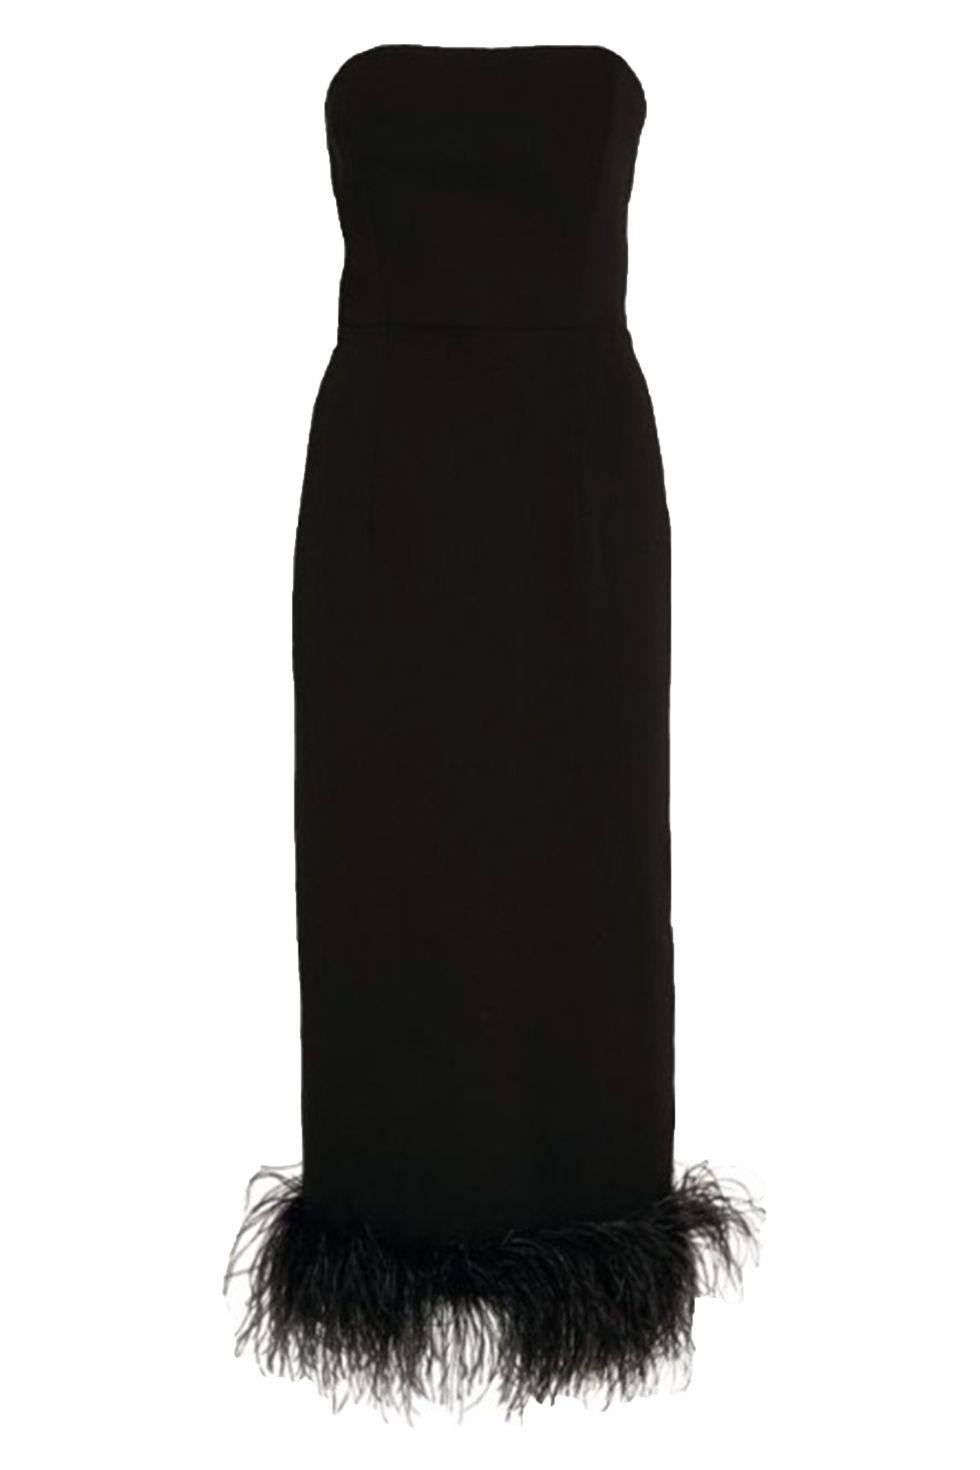 Zoë Kravitz wears a black The Row dress to Tiffany party in LA